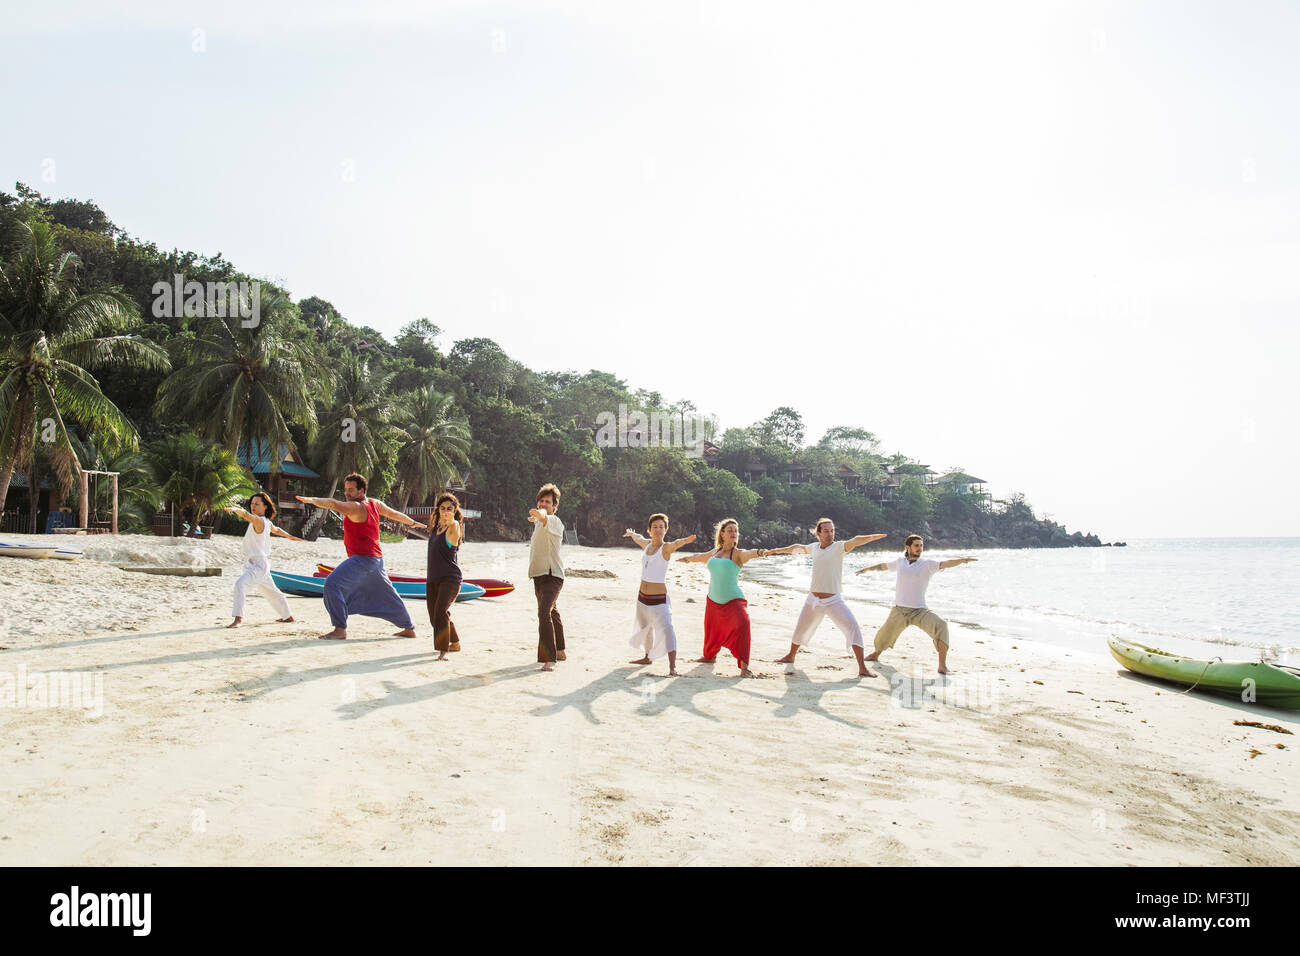 La Thaïlande, Koh Phangan, groupe de personnes faisant du yoga sur une plage Banque D'Images